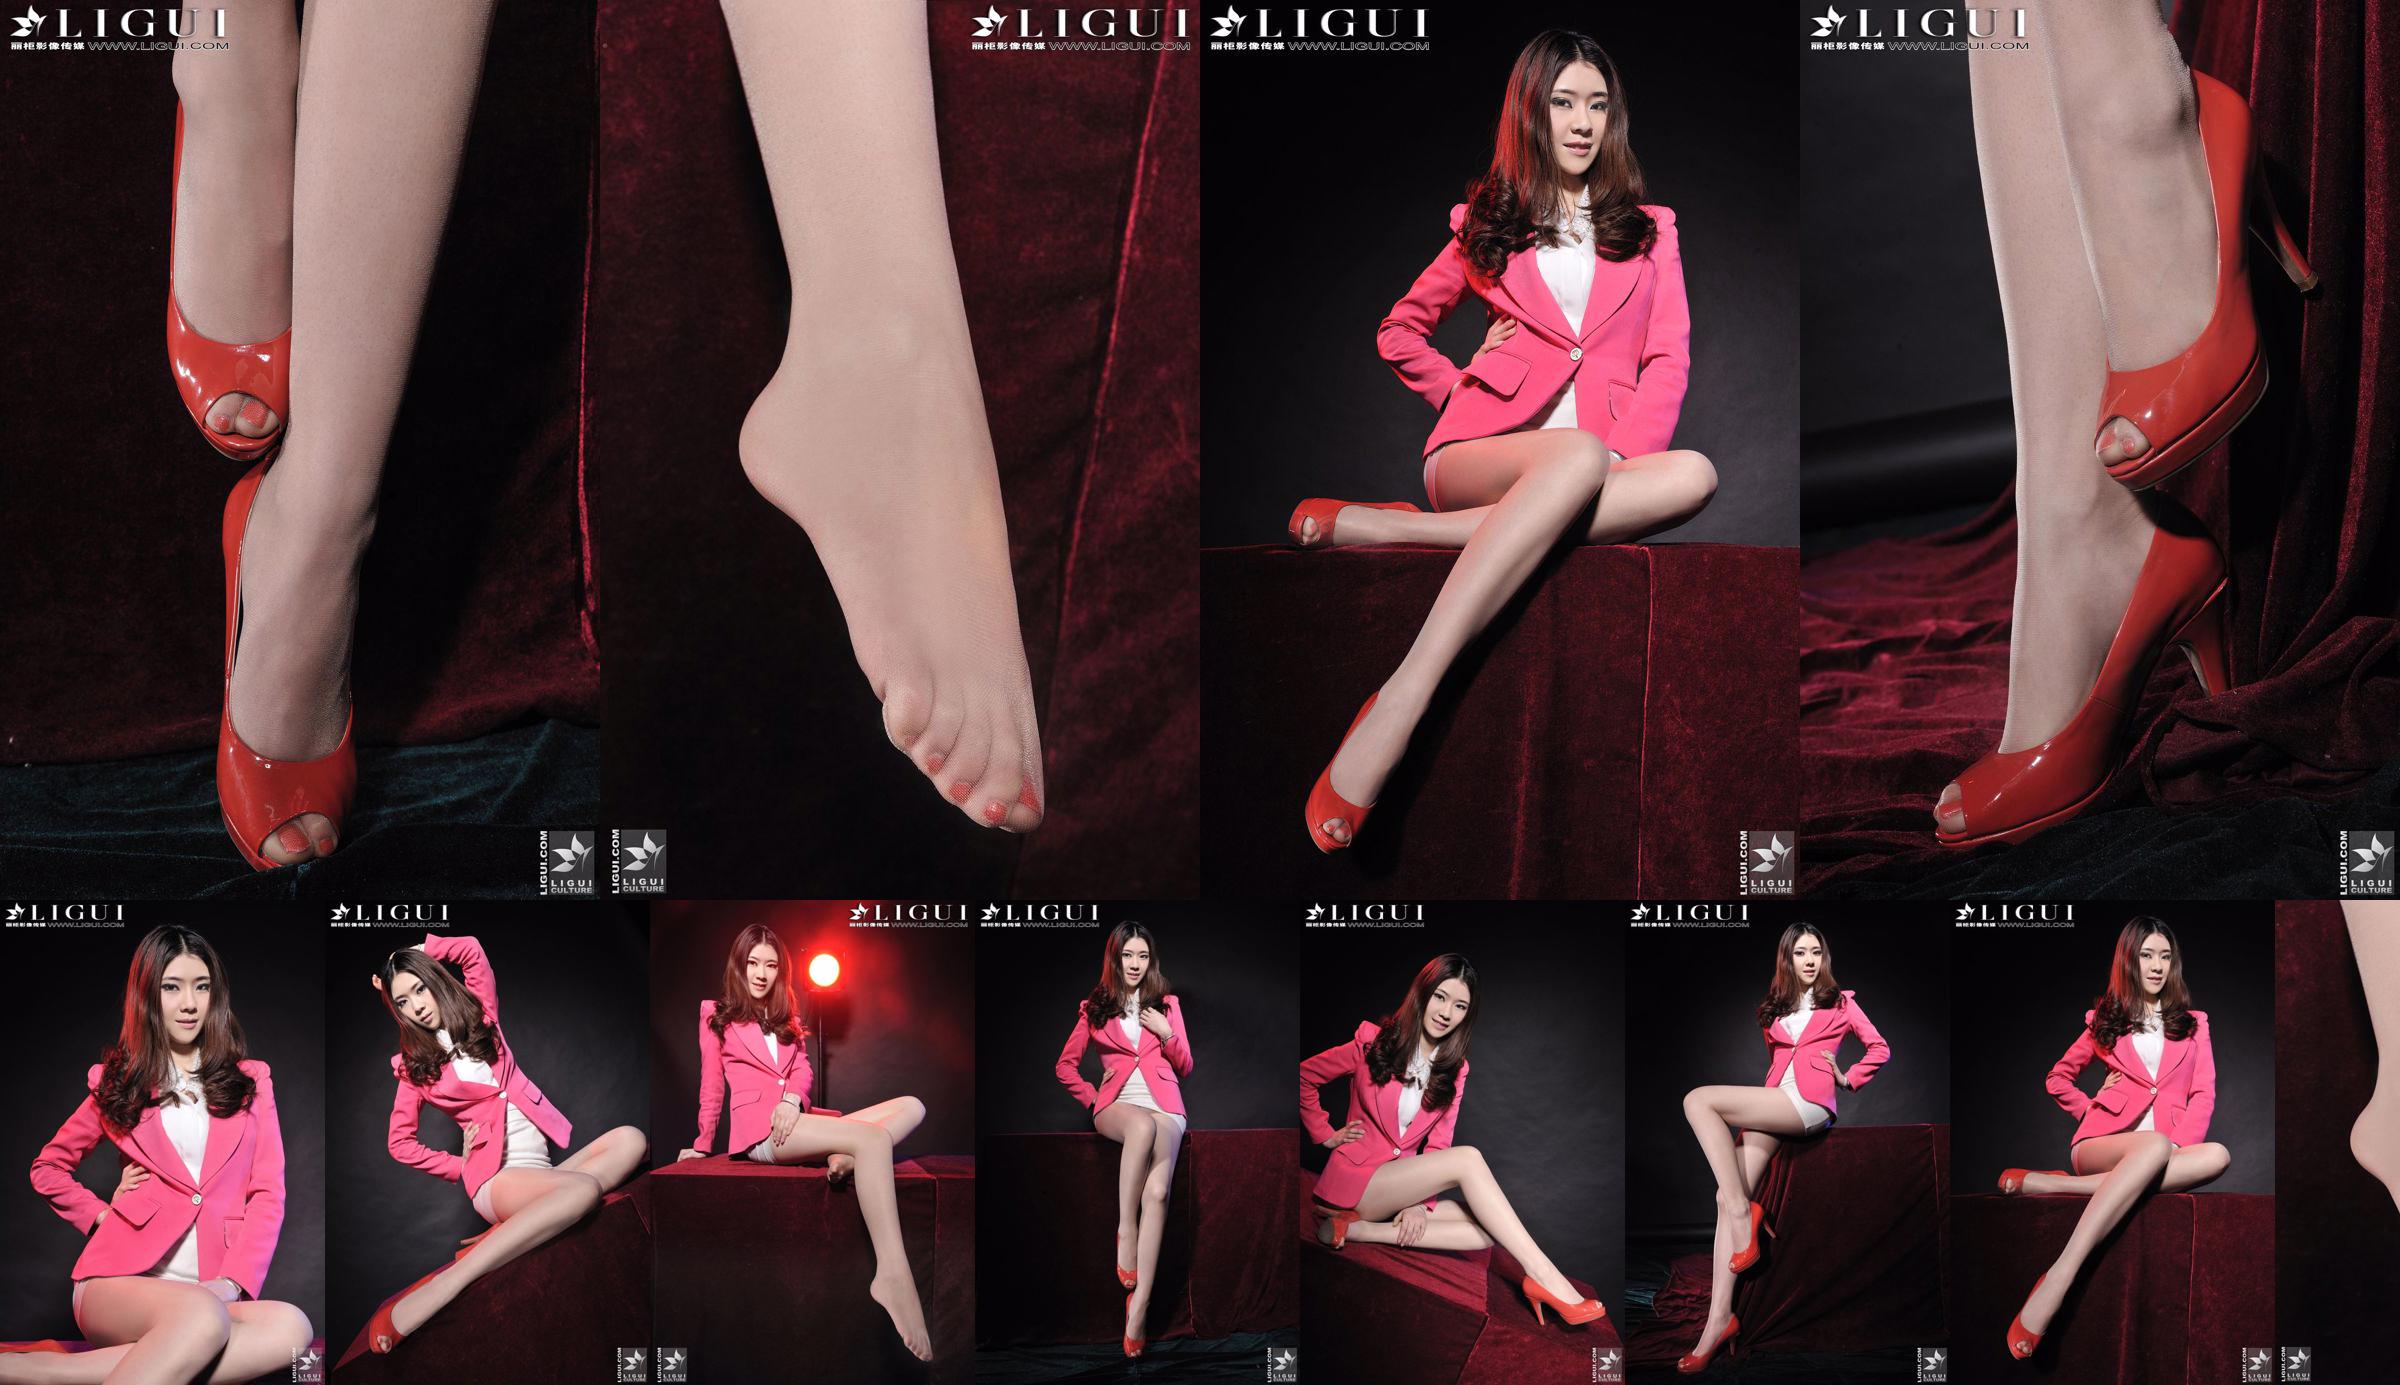 モデルチェンチェン「赤いハイヒールガール」[丽柜LiGui]美しい脚と翡翠の足の写真写真 No.74d6c5 ページ1